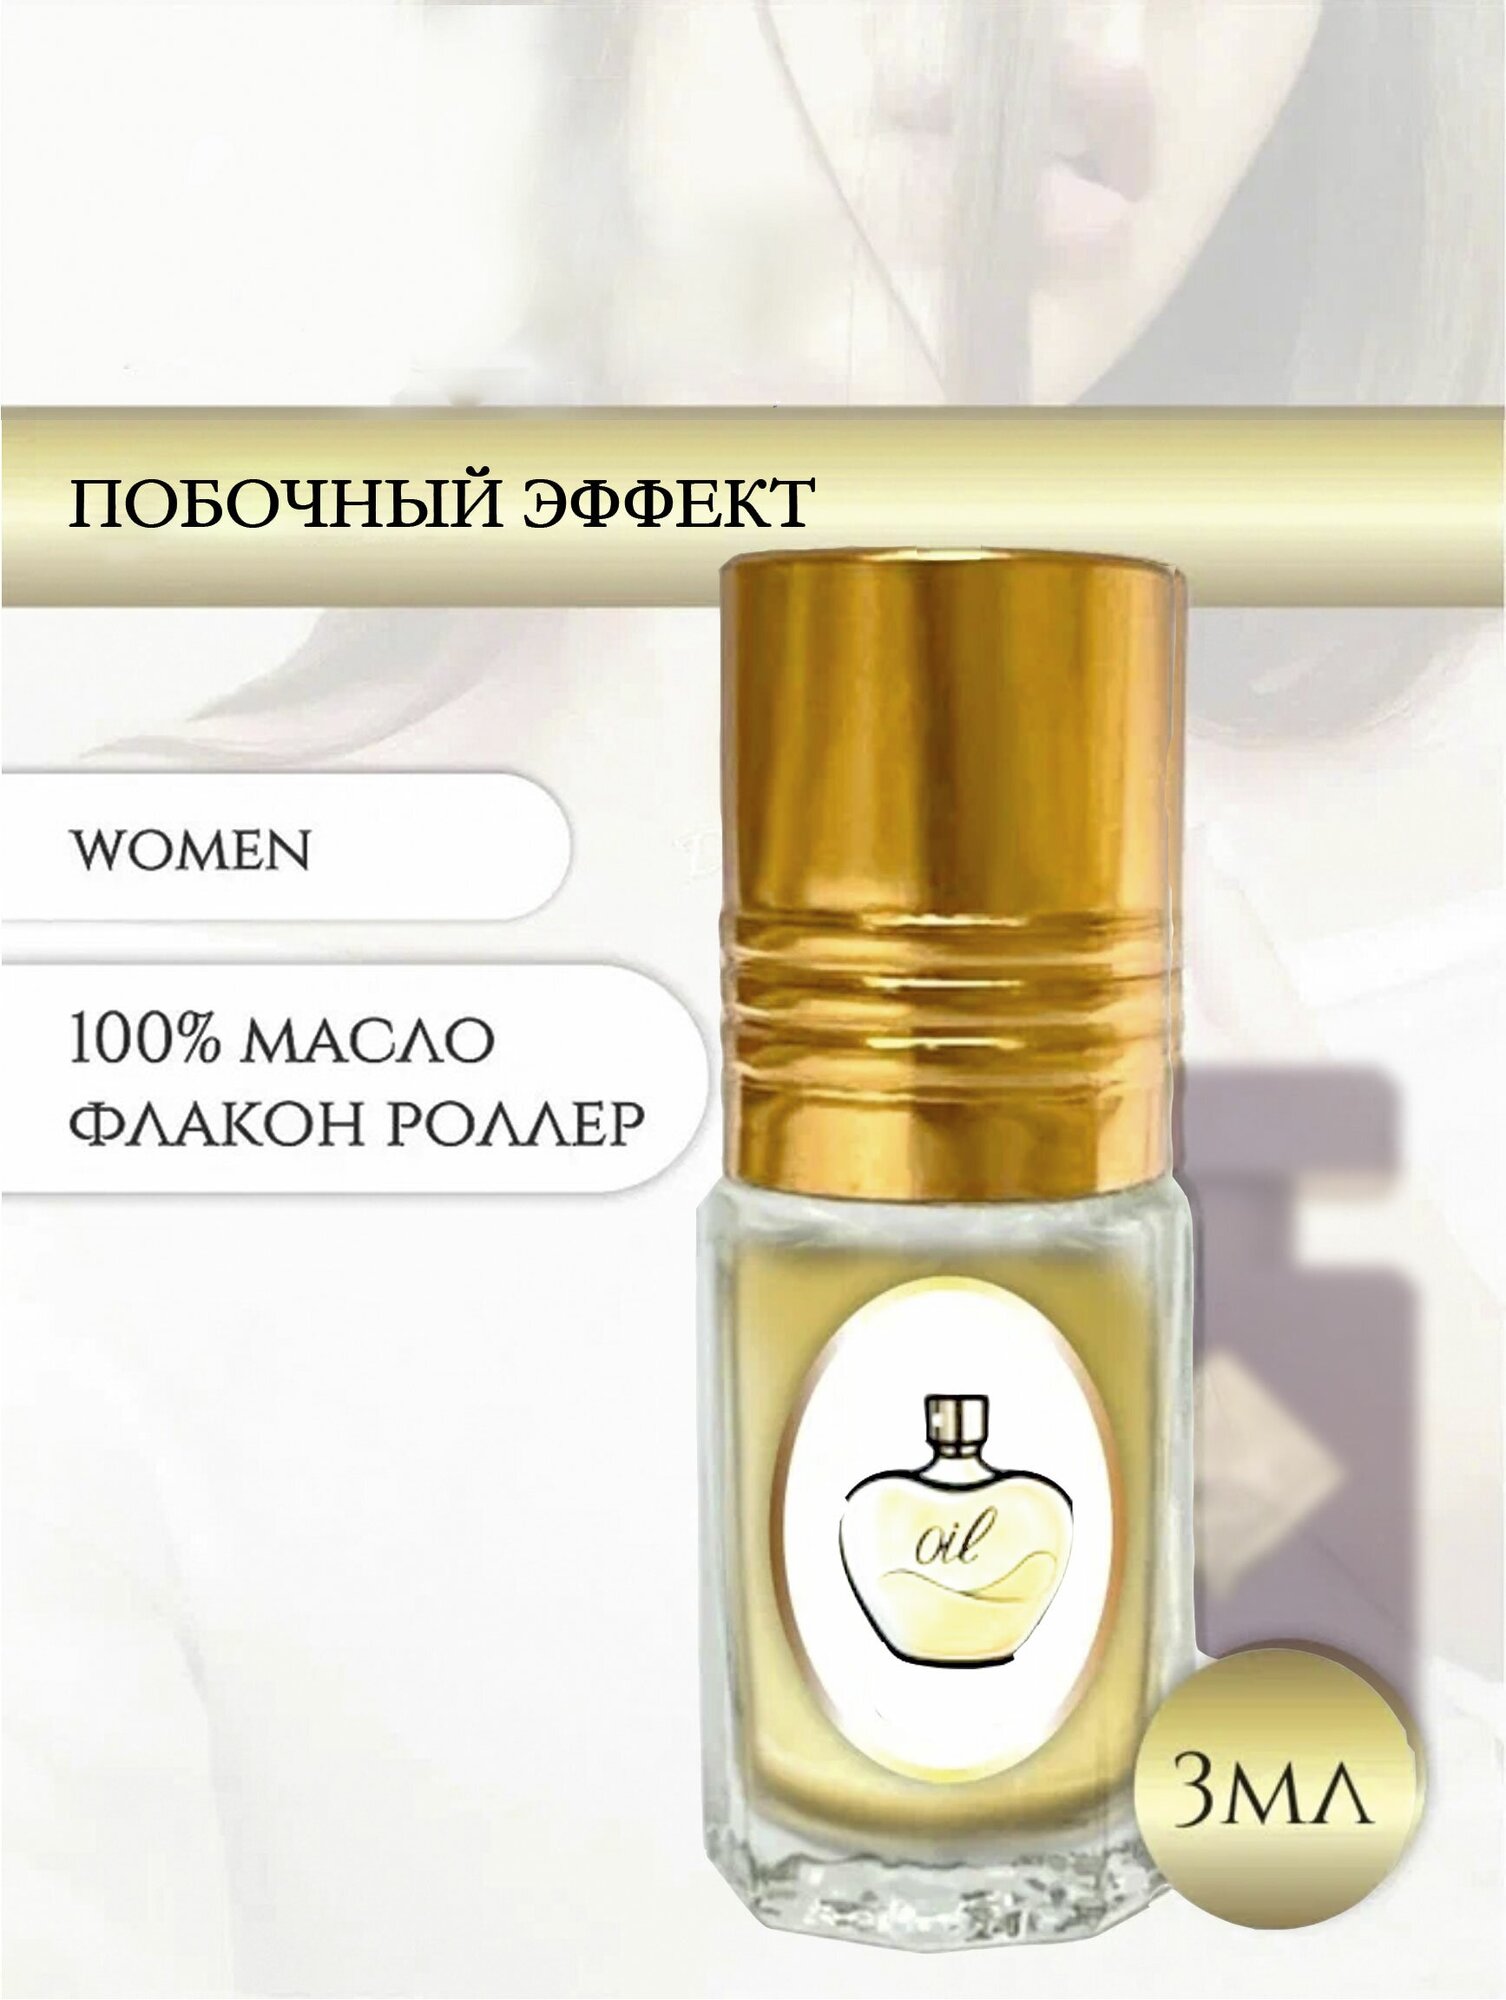 Aromat Oil Духи женские/мужские Побочный эффект